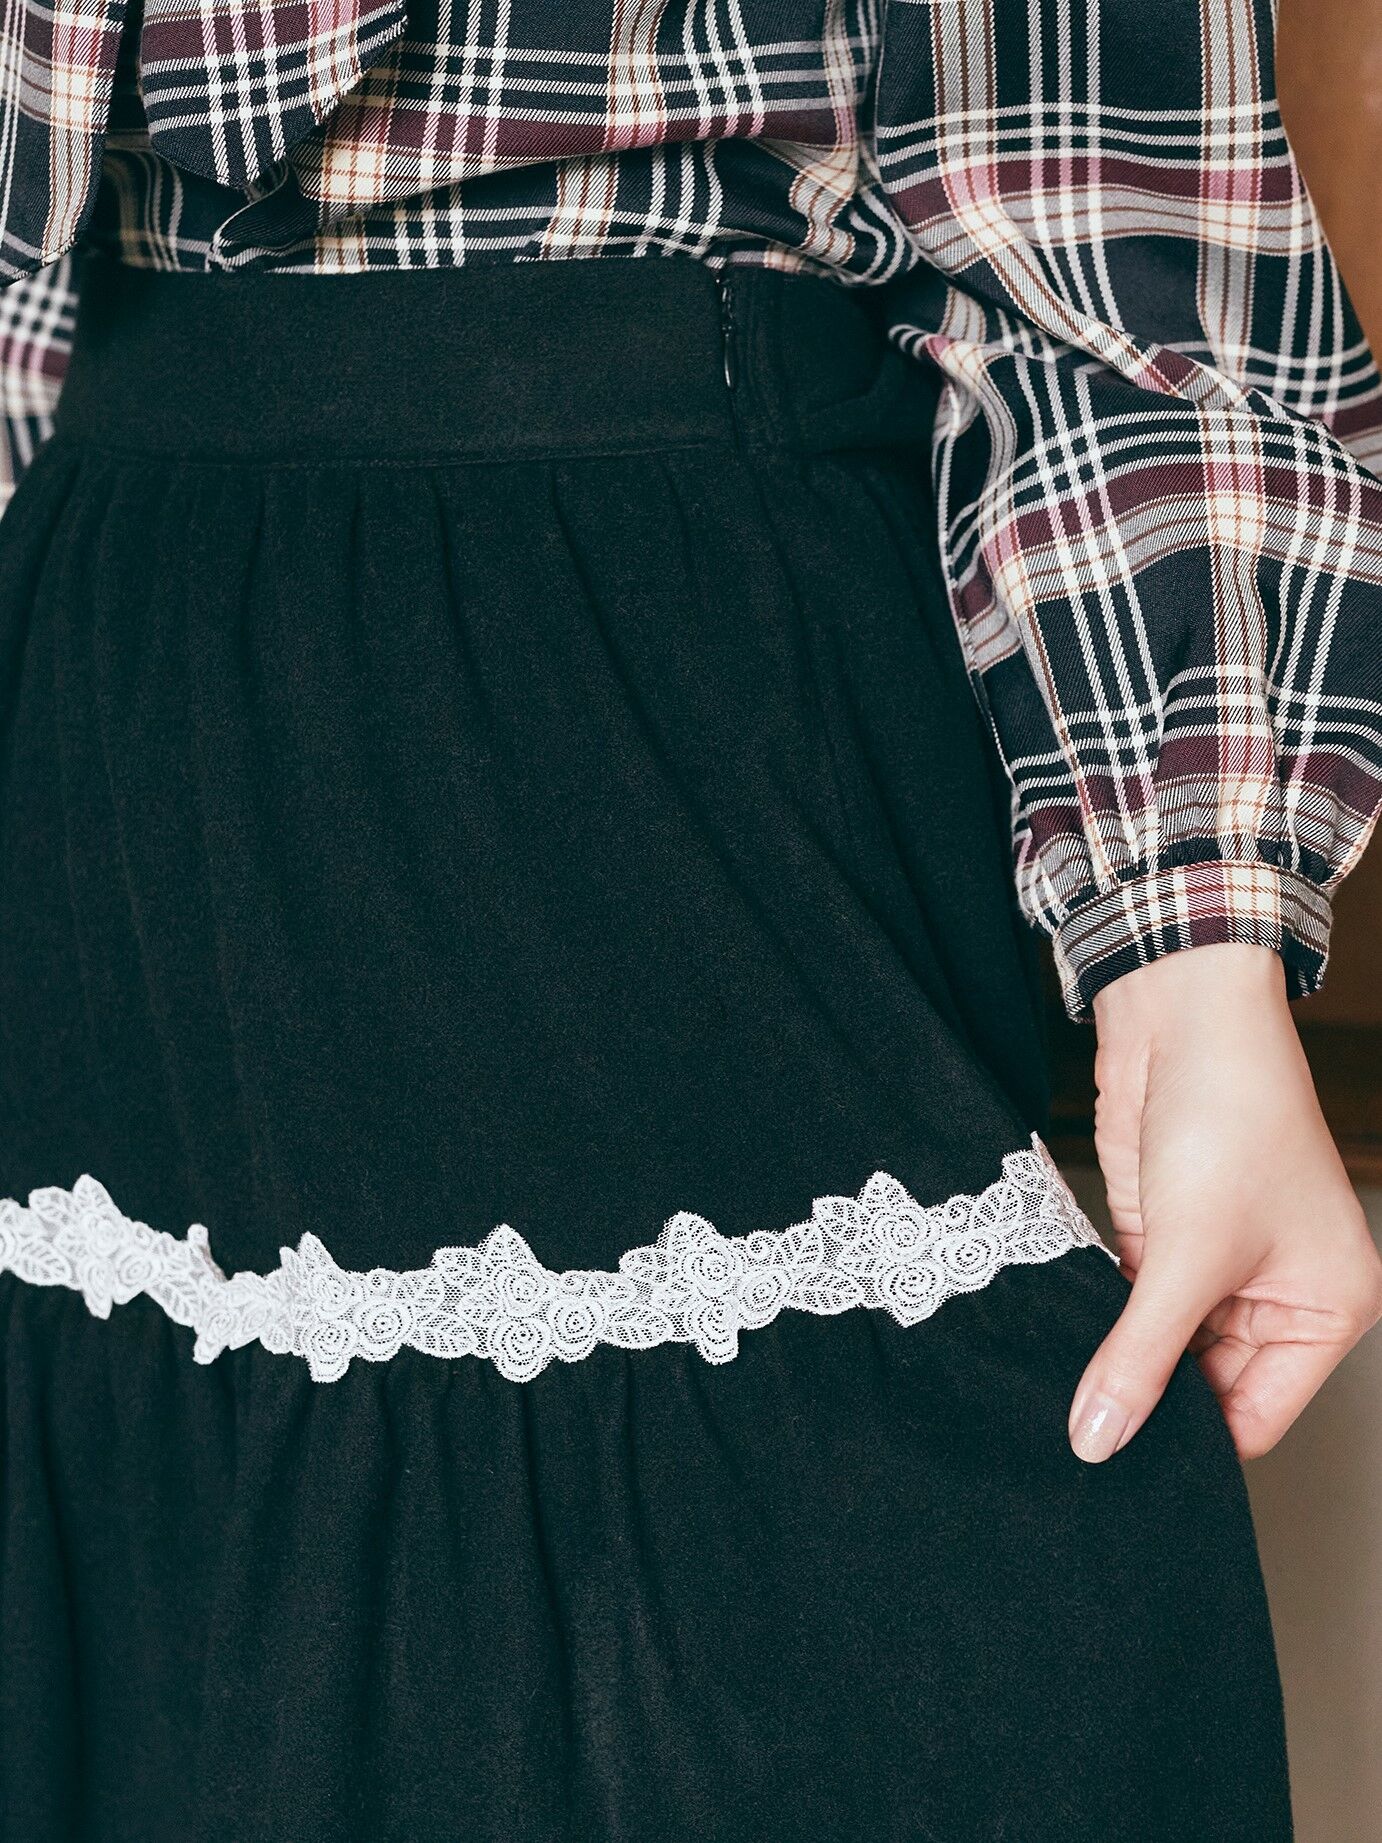 日本正規取扱商品 メゾンドフルール カノン 幸福について想うスカート